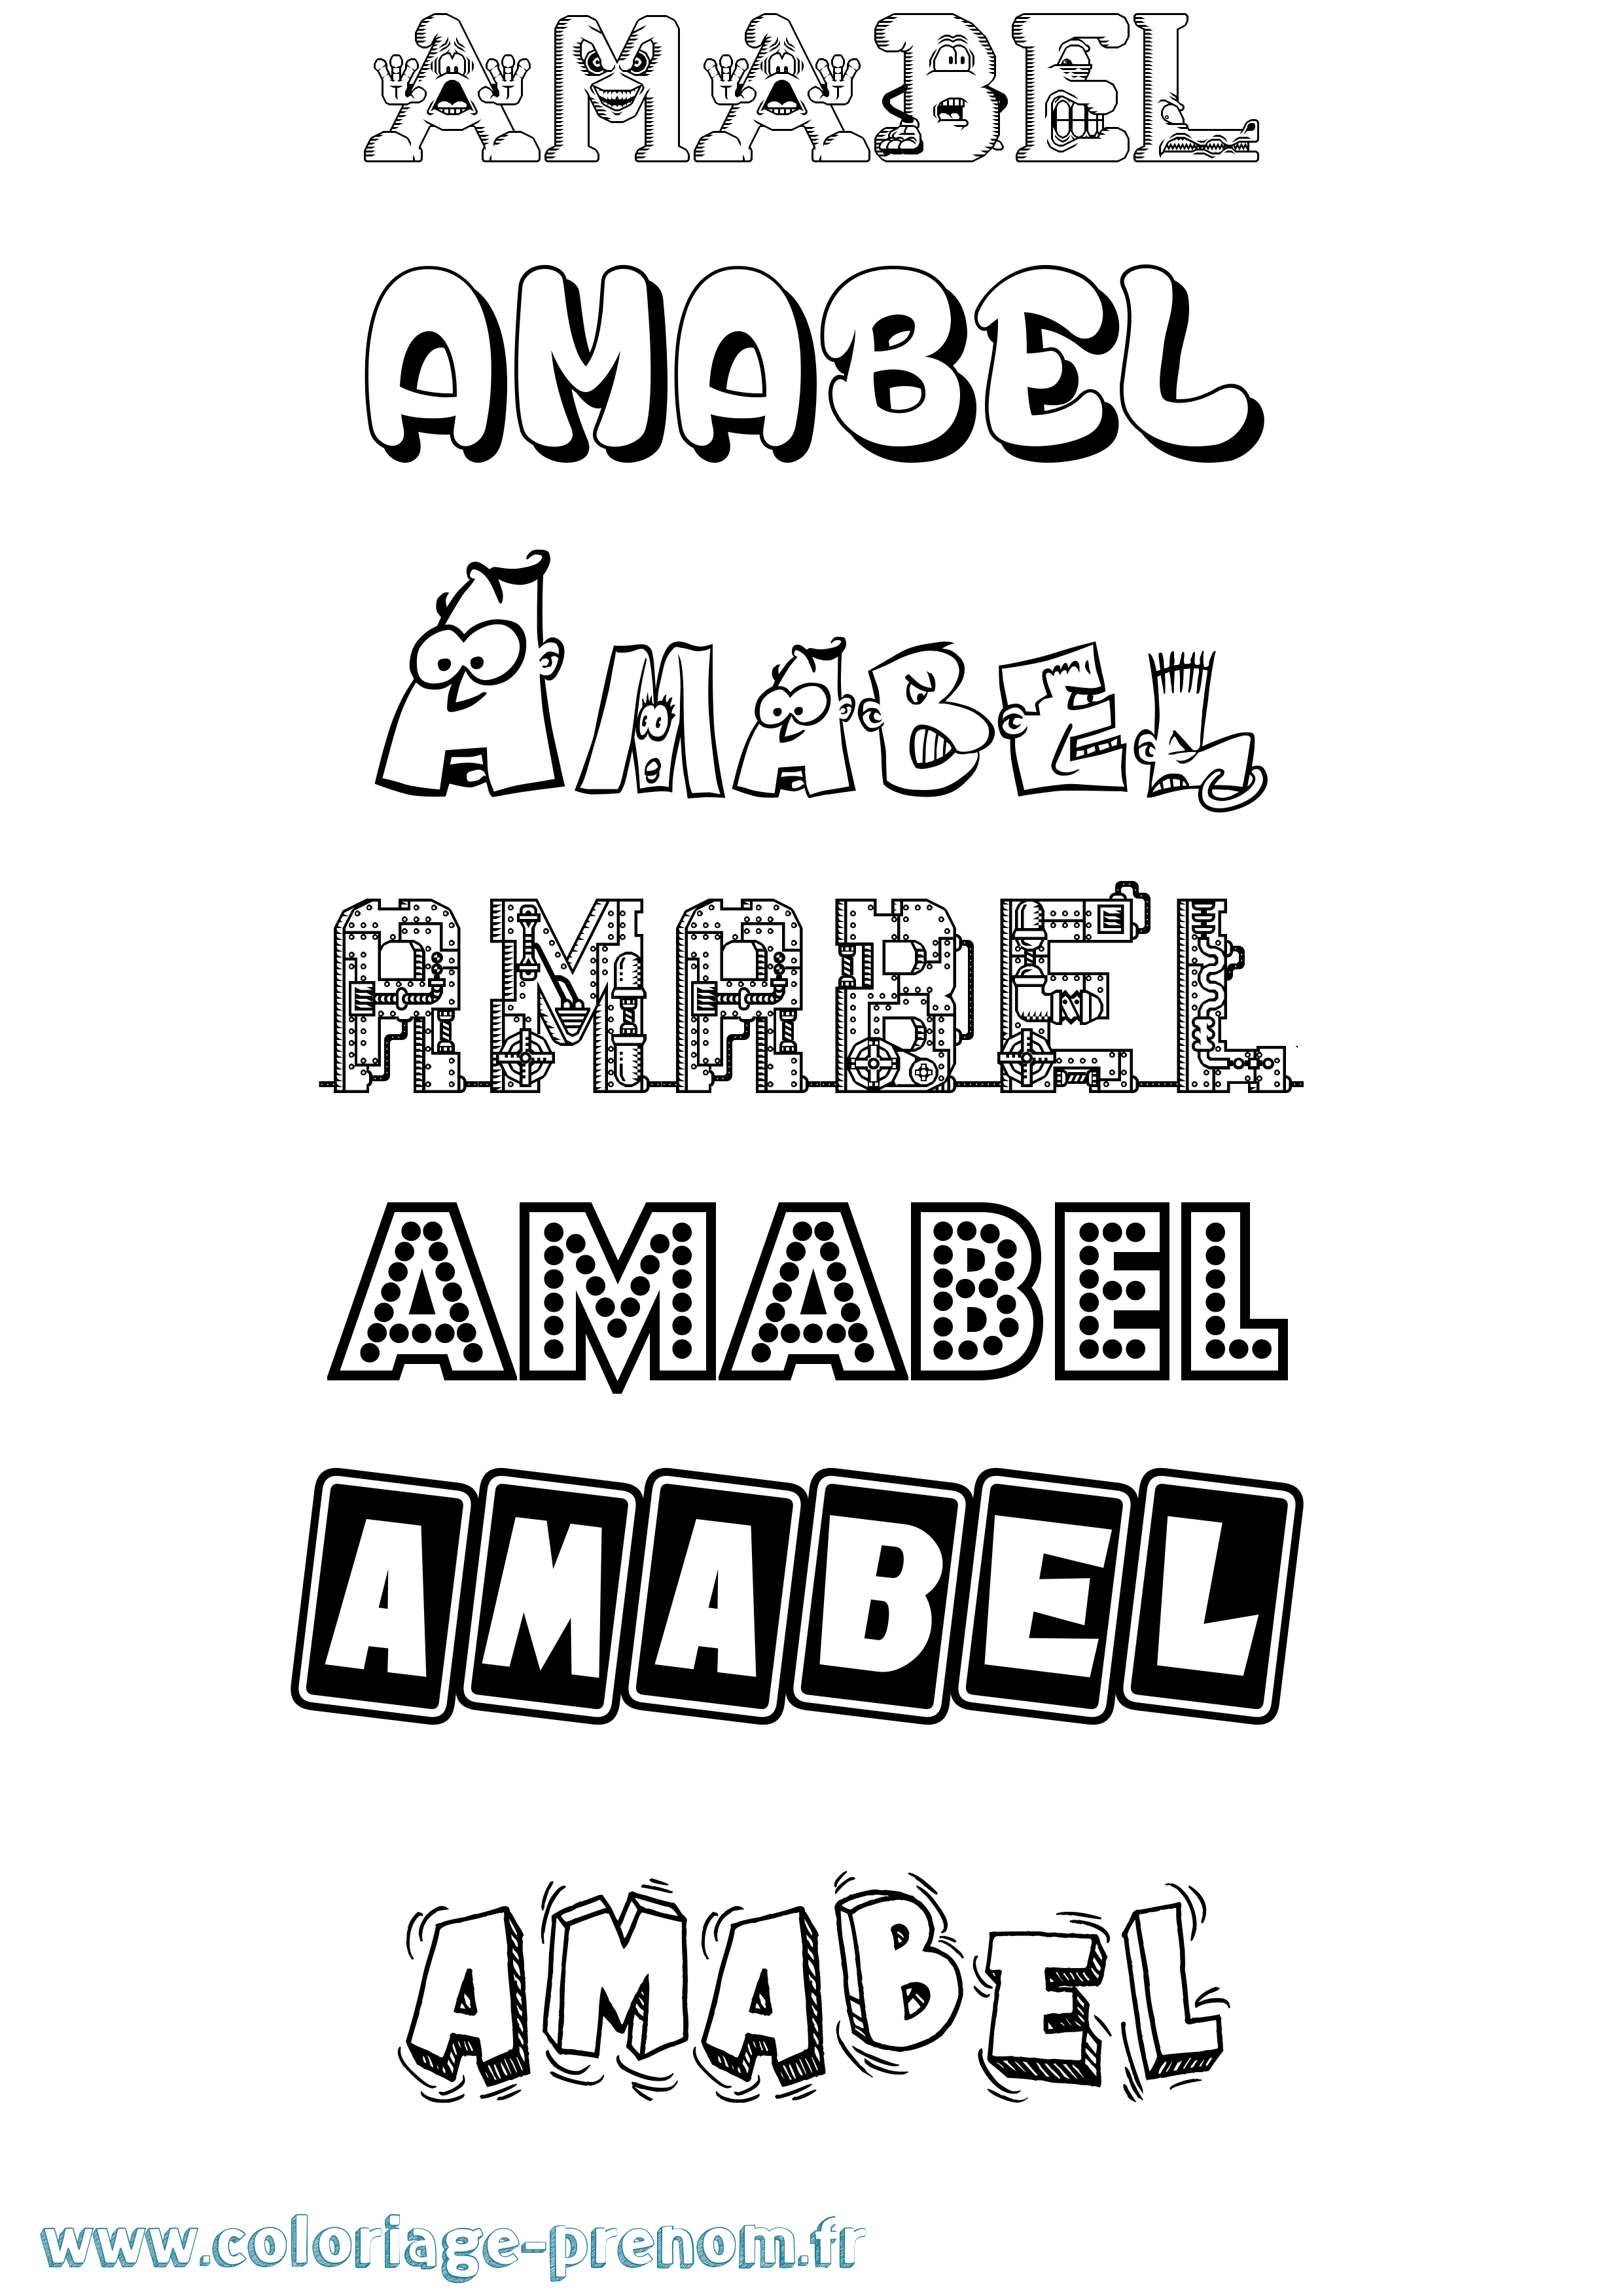 Coloriage prénom Amabel Fun